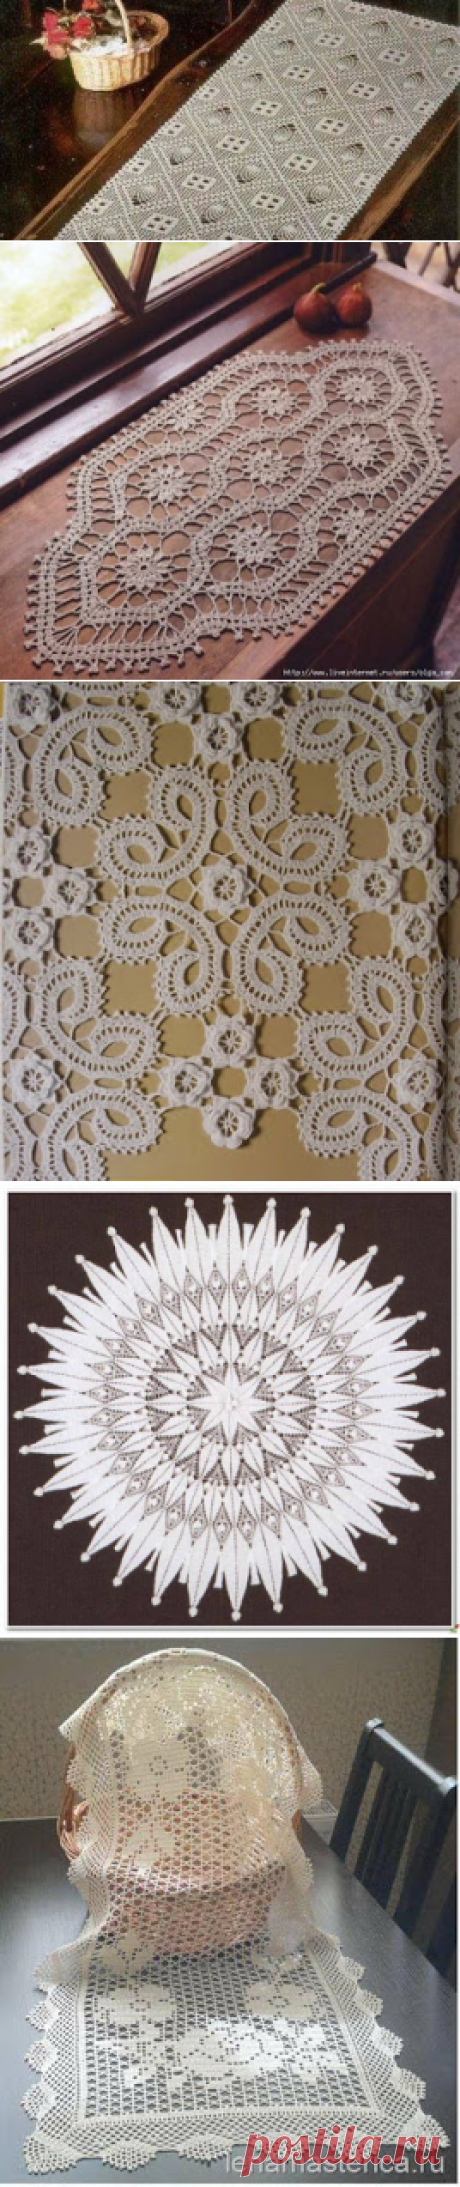 Много разных салфеток Tina's handicraft : crochet tablecloth